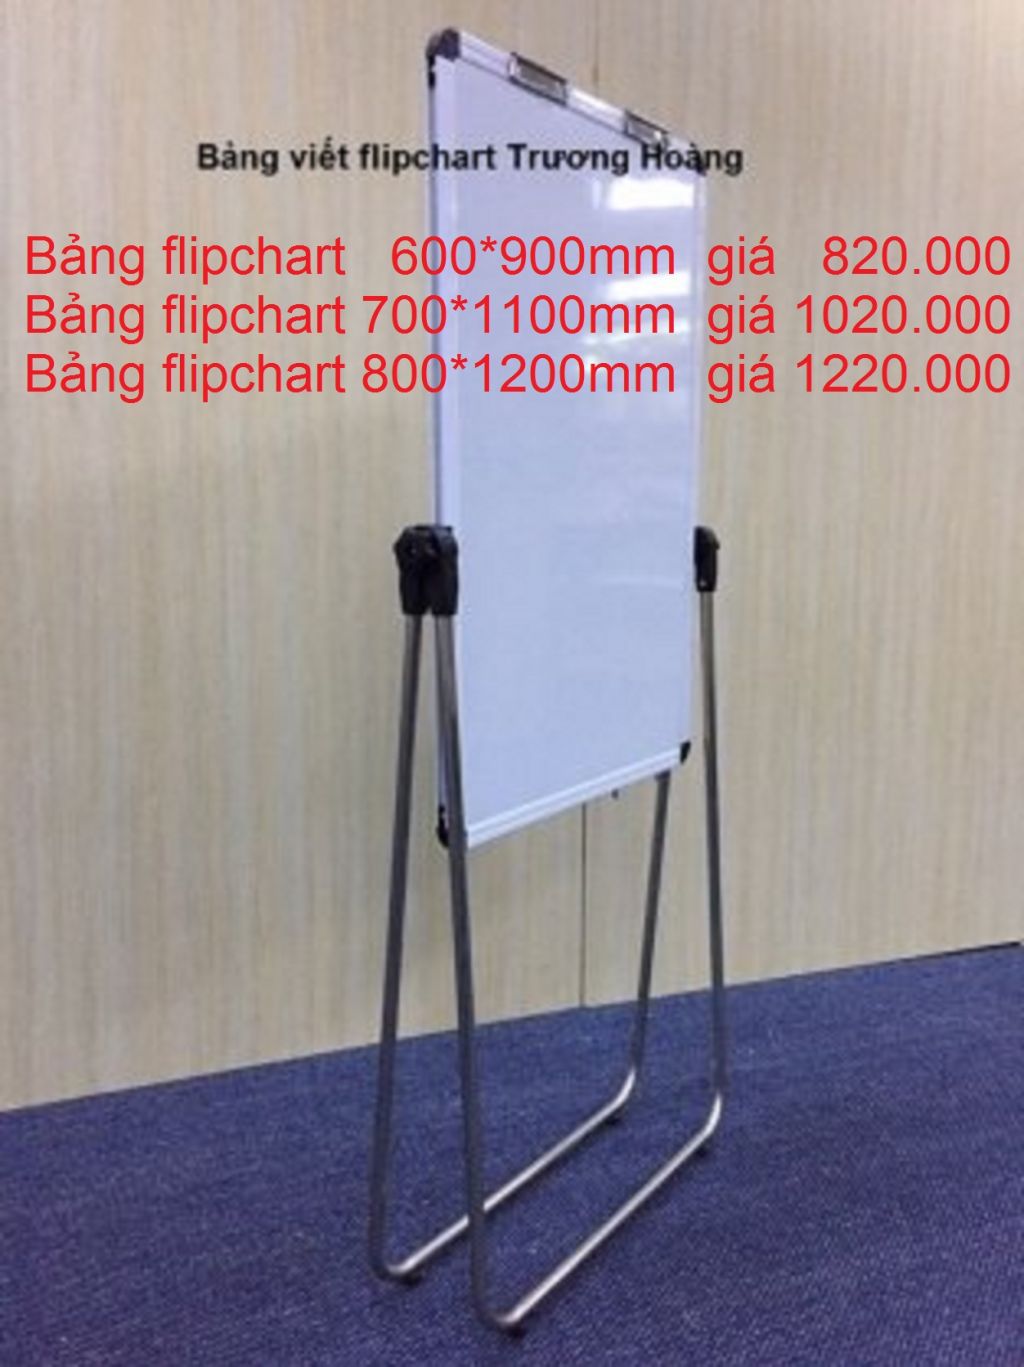 Báo giá bảng flipchart 2 mặt giá rẻ dành cho văn phòng 01